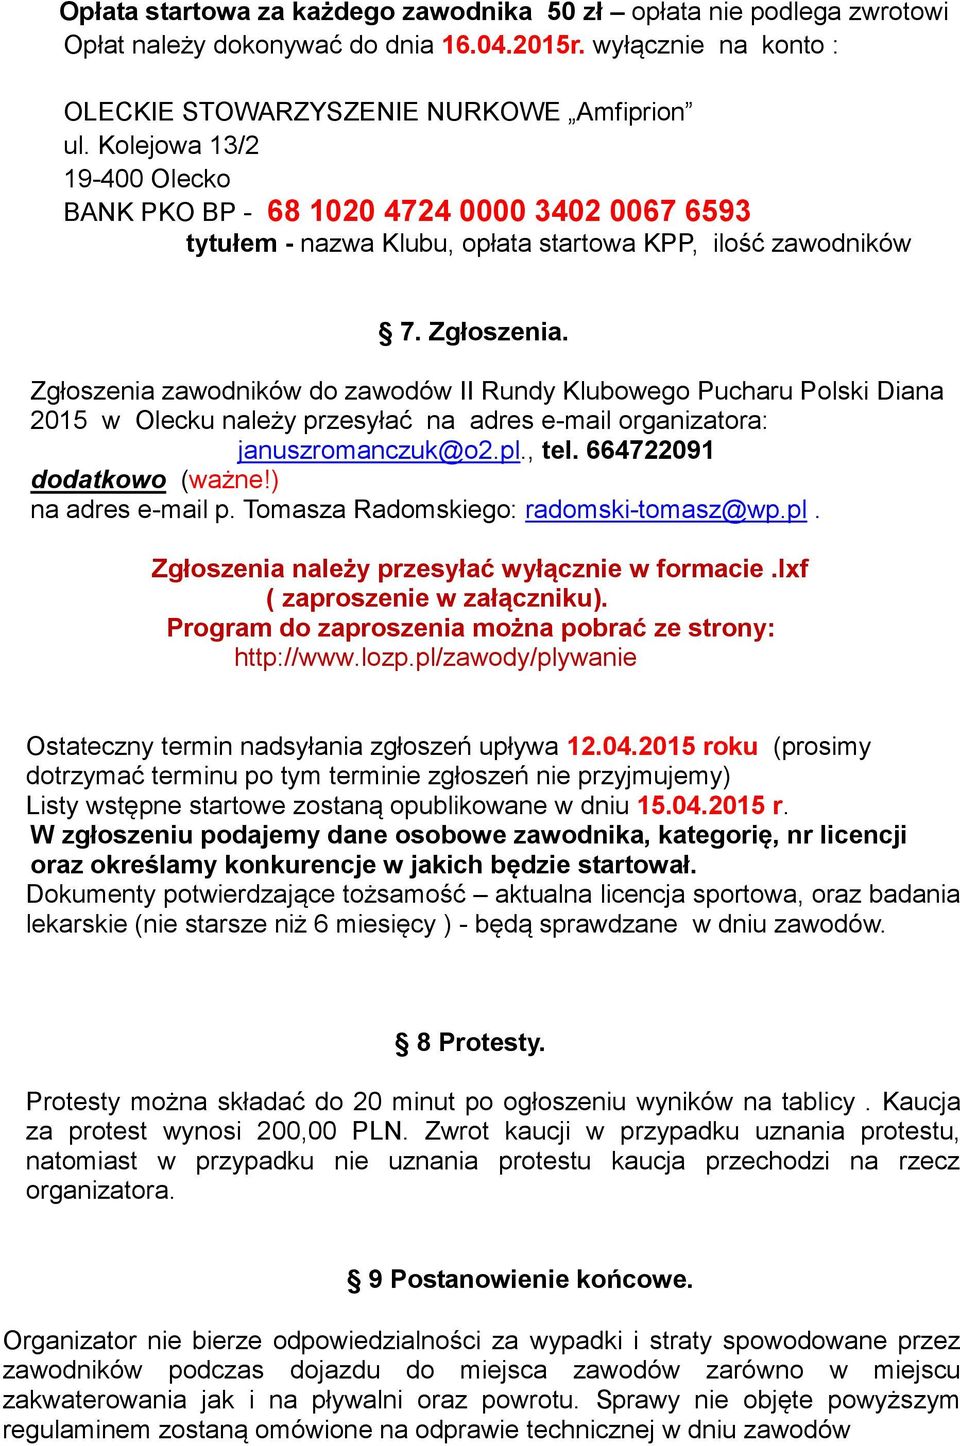 Zgłoszenia zawodników do zawodów II Rundy Klubowego Pucharu Polski Diana 2015 w Olecku należy przesyłać na adres e-mail organizatora: januszromanczuk@o2.pl., tel. 664722091 dodatkowo (ważne!